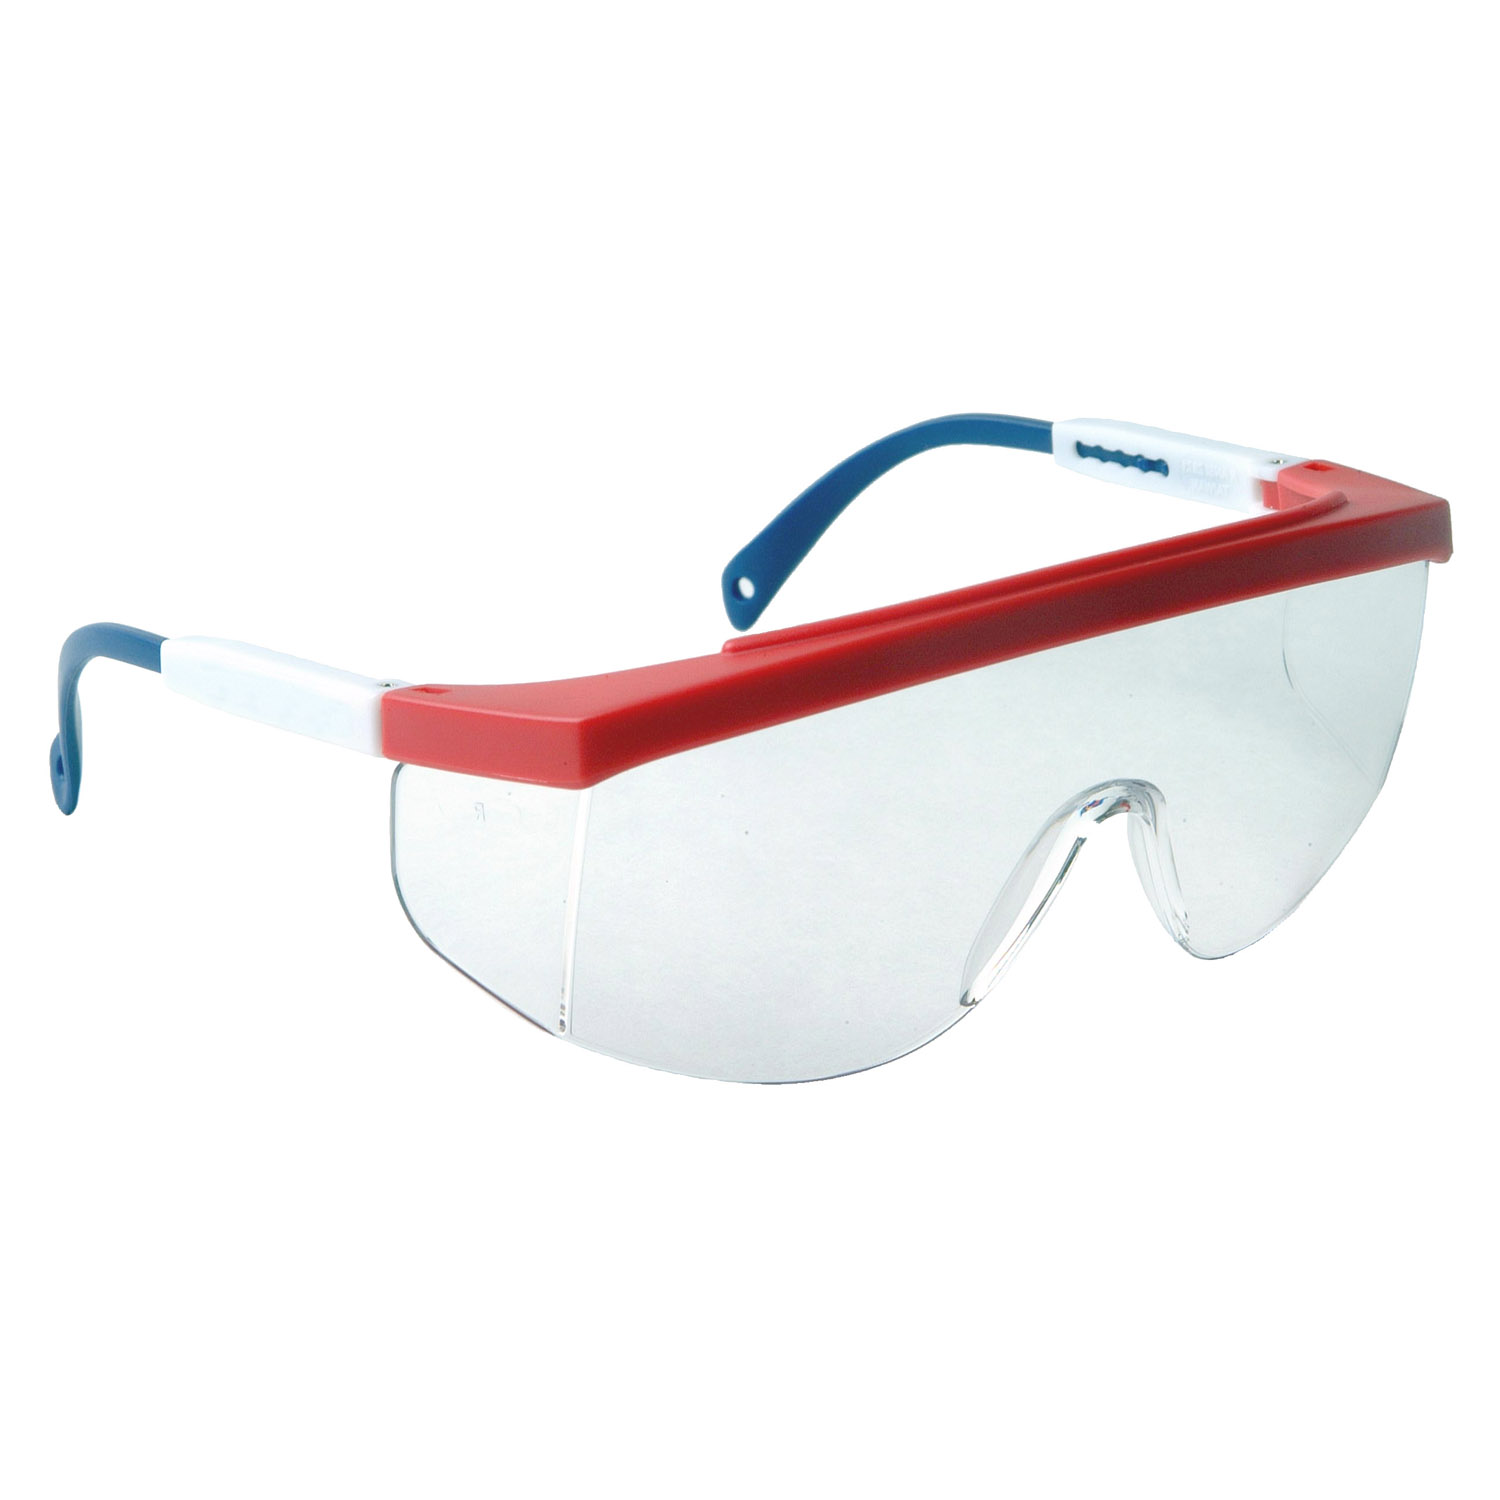 Galaxy™ Safety Eyewear - Red/White/Blue Frame - Clear Anti-Fog Lens - Anti-Fog Lens